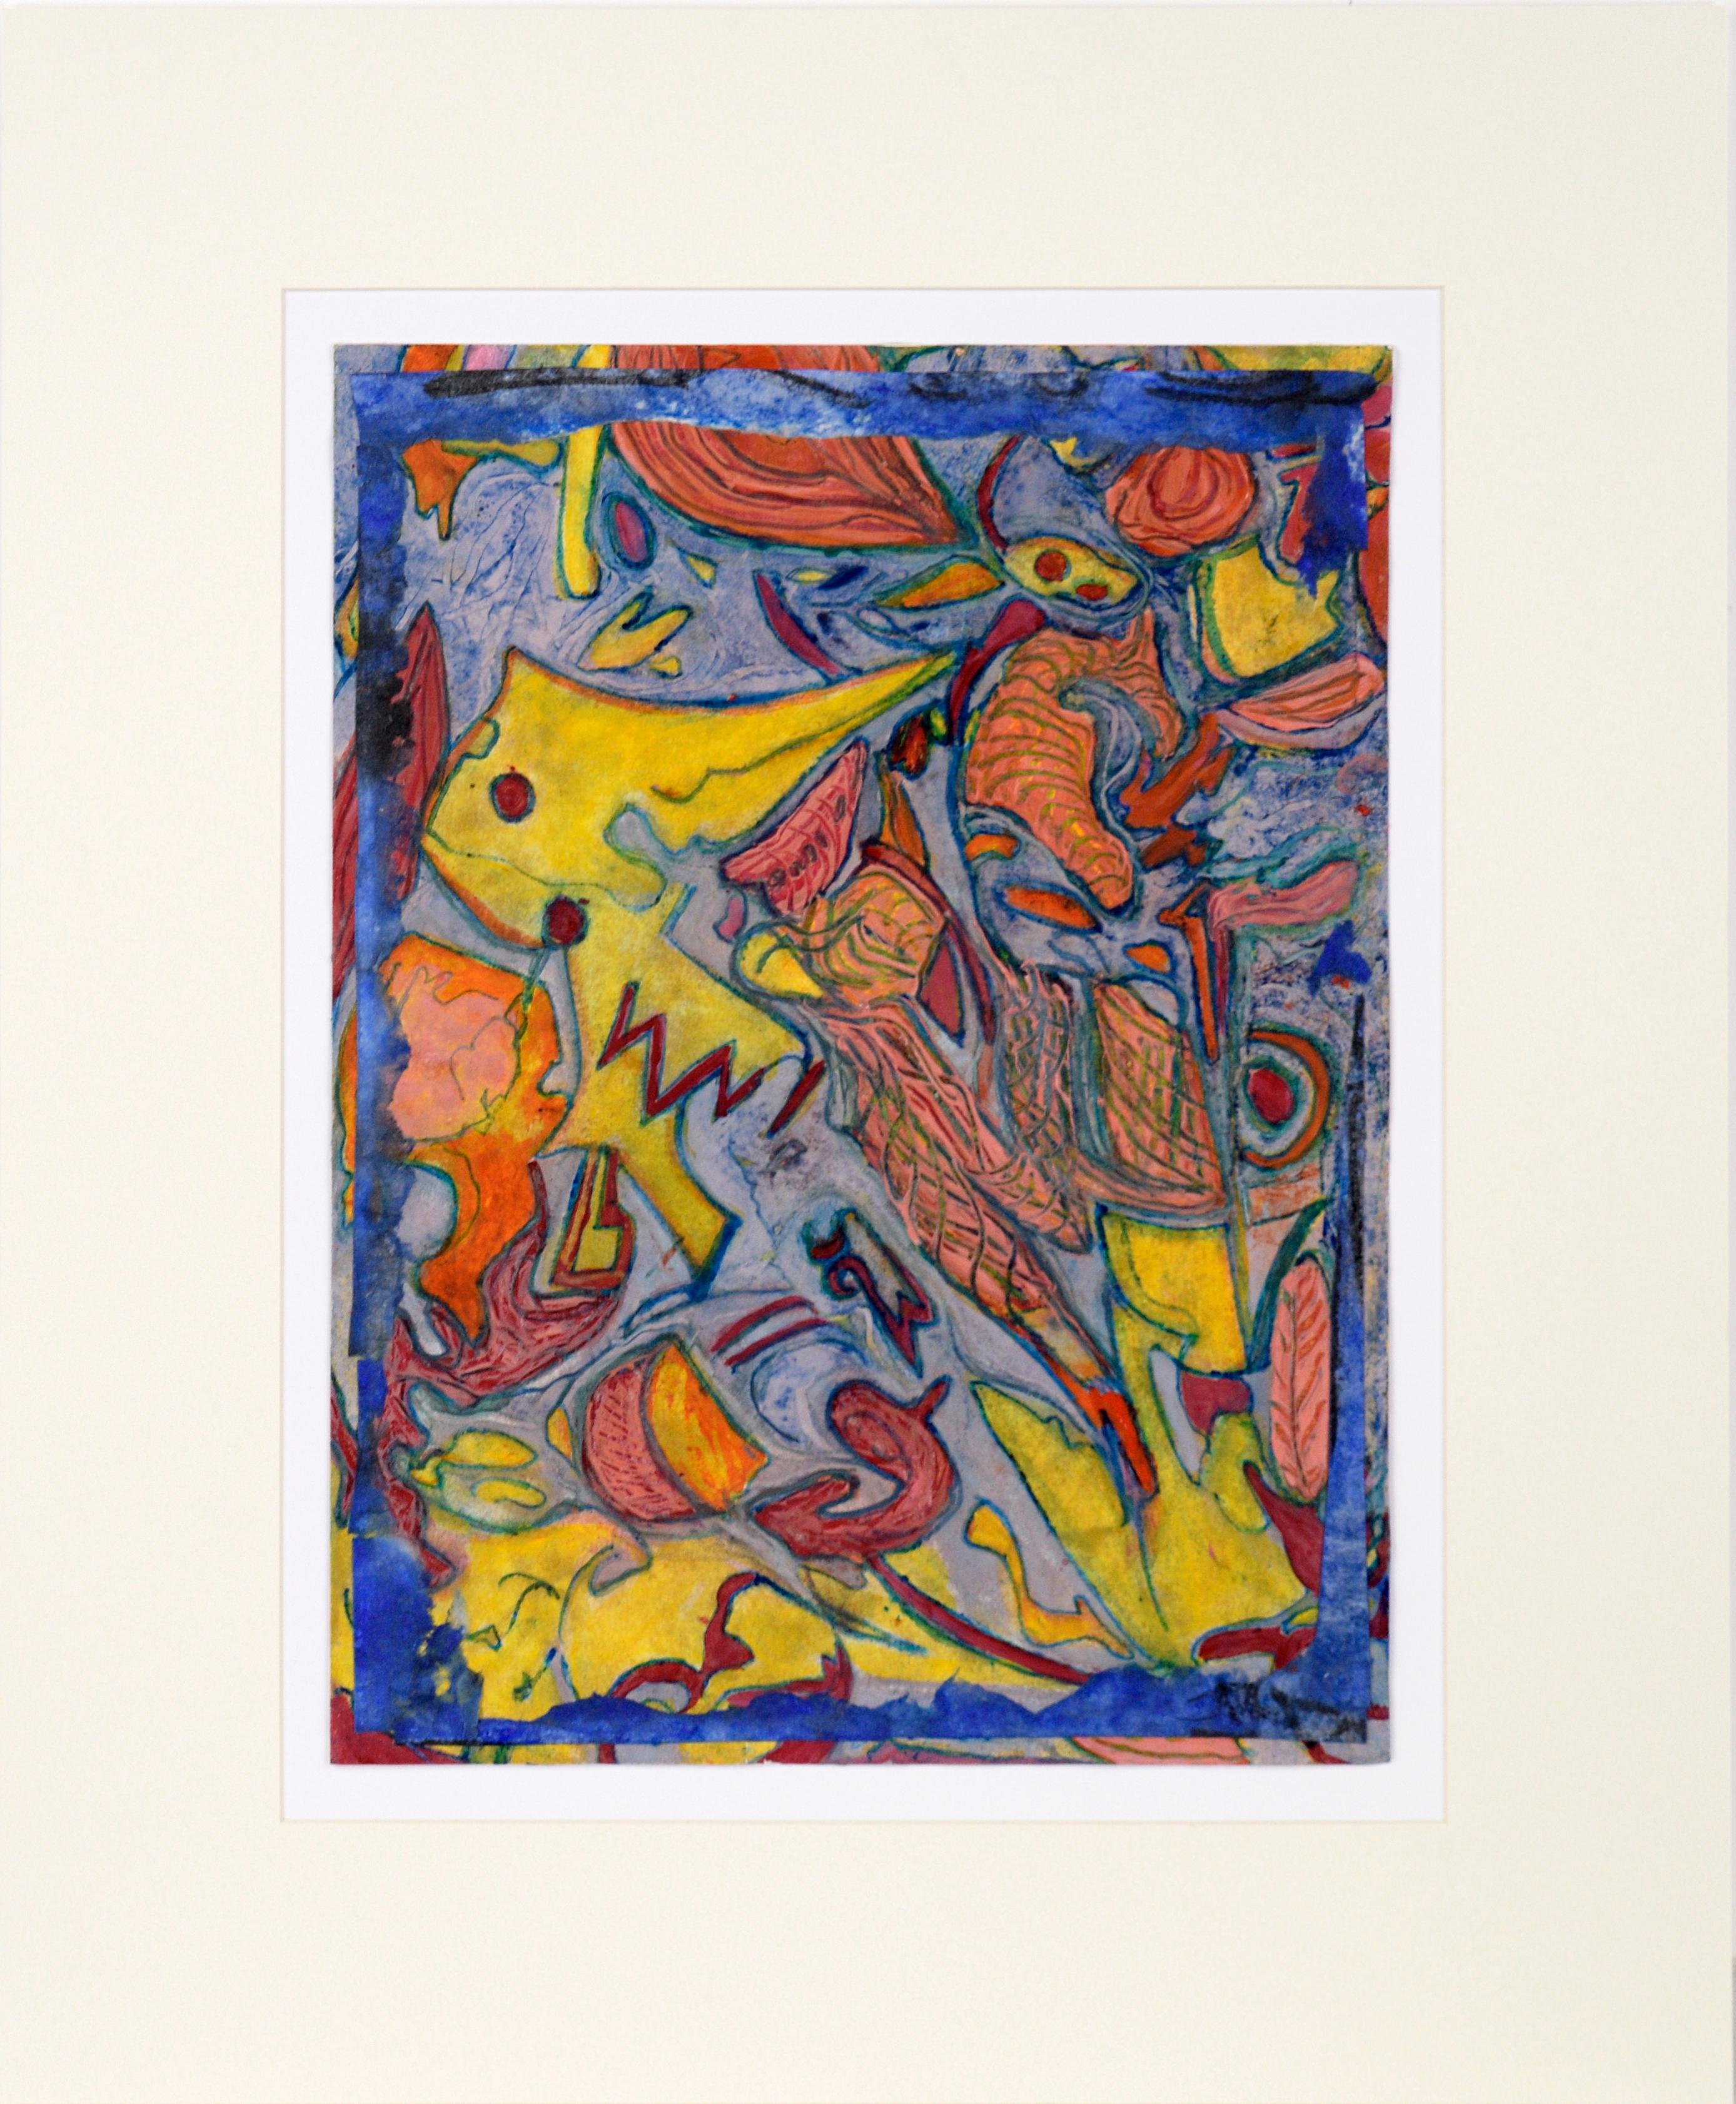 Abstract Painting Jennie Rafton - Carnaval abstrait en bleu, orange et jaune - Huile et Collage sur papier